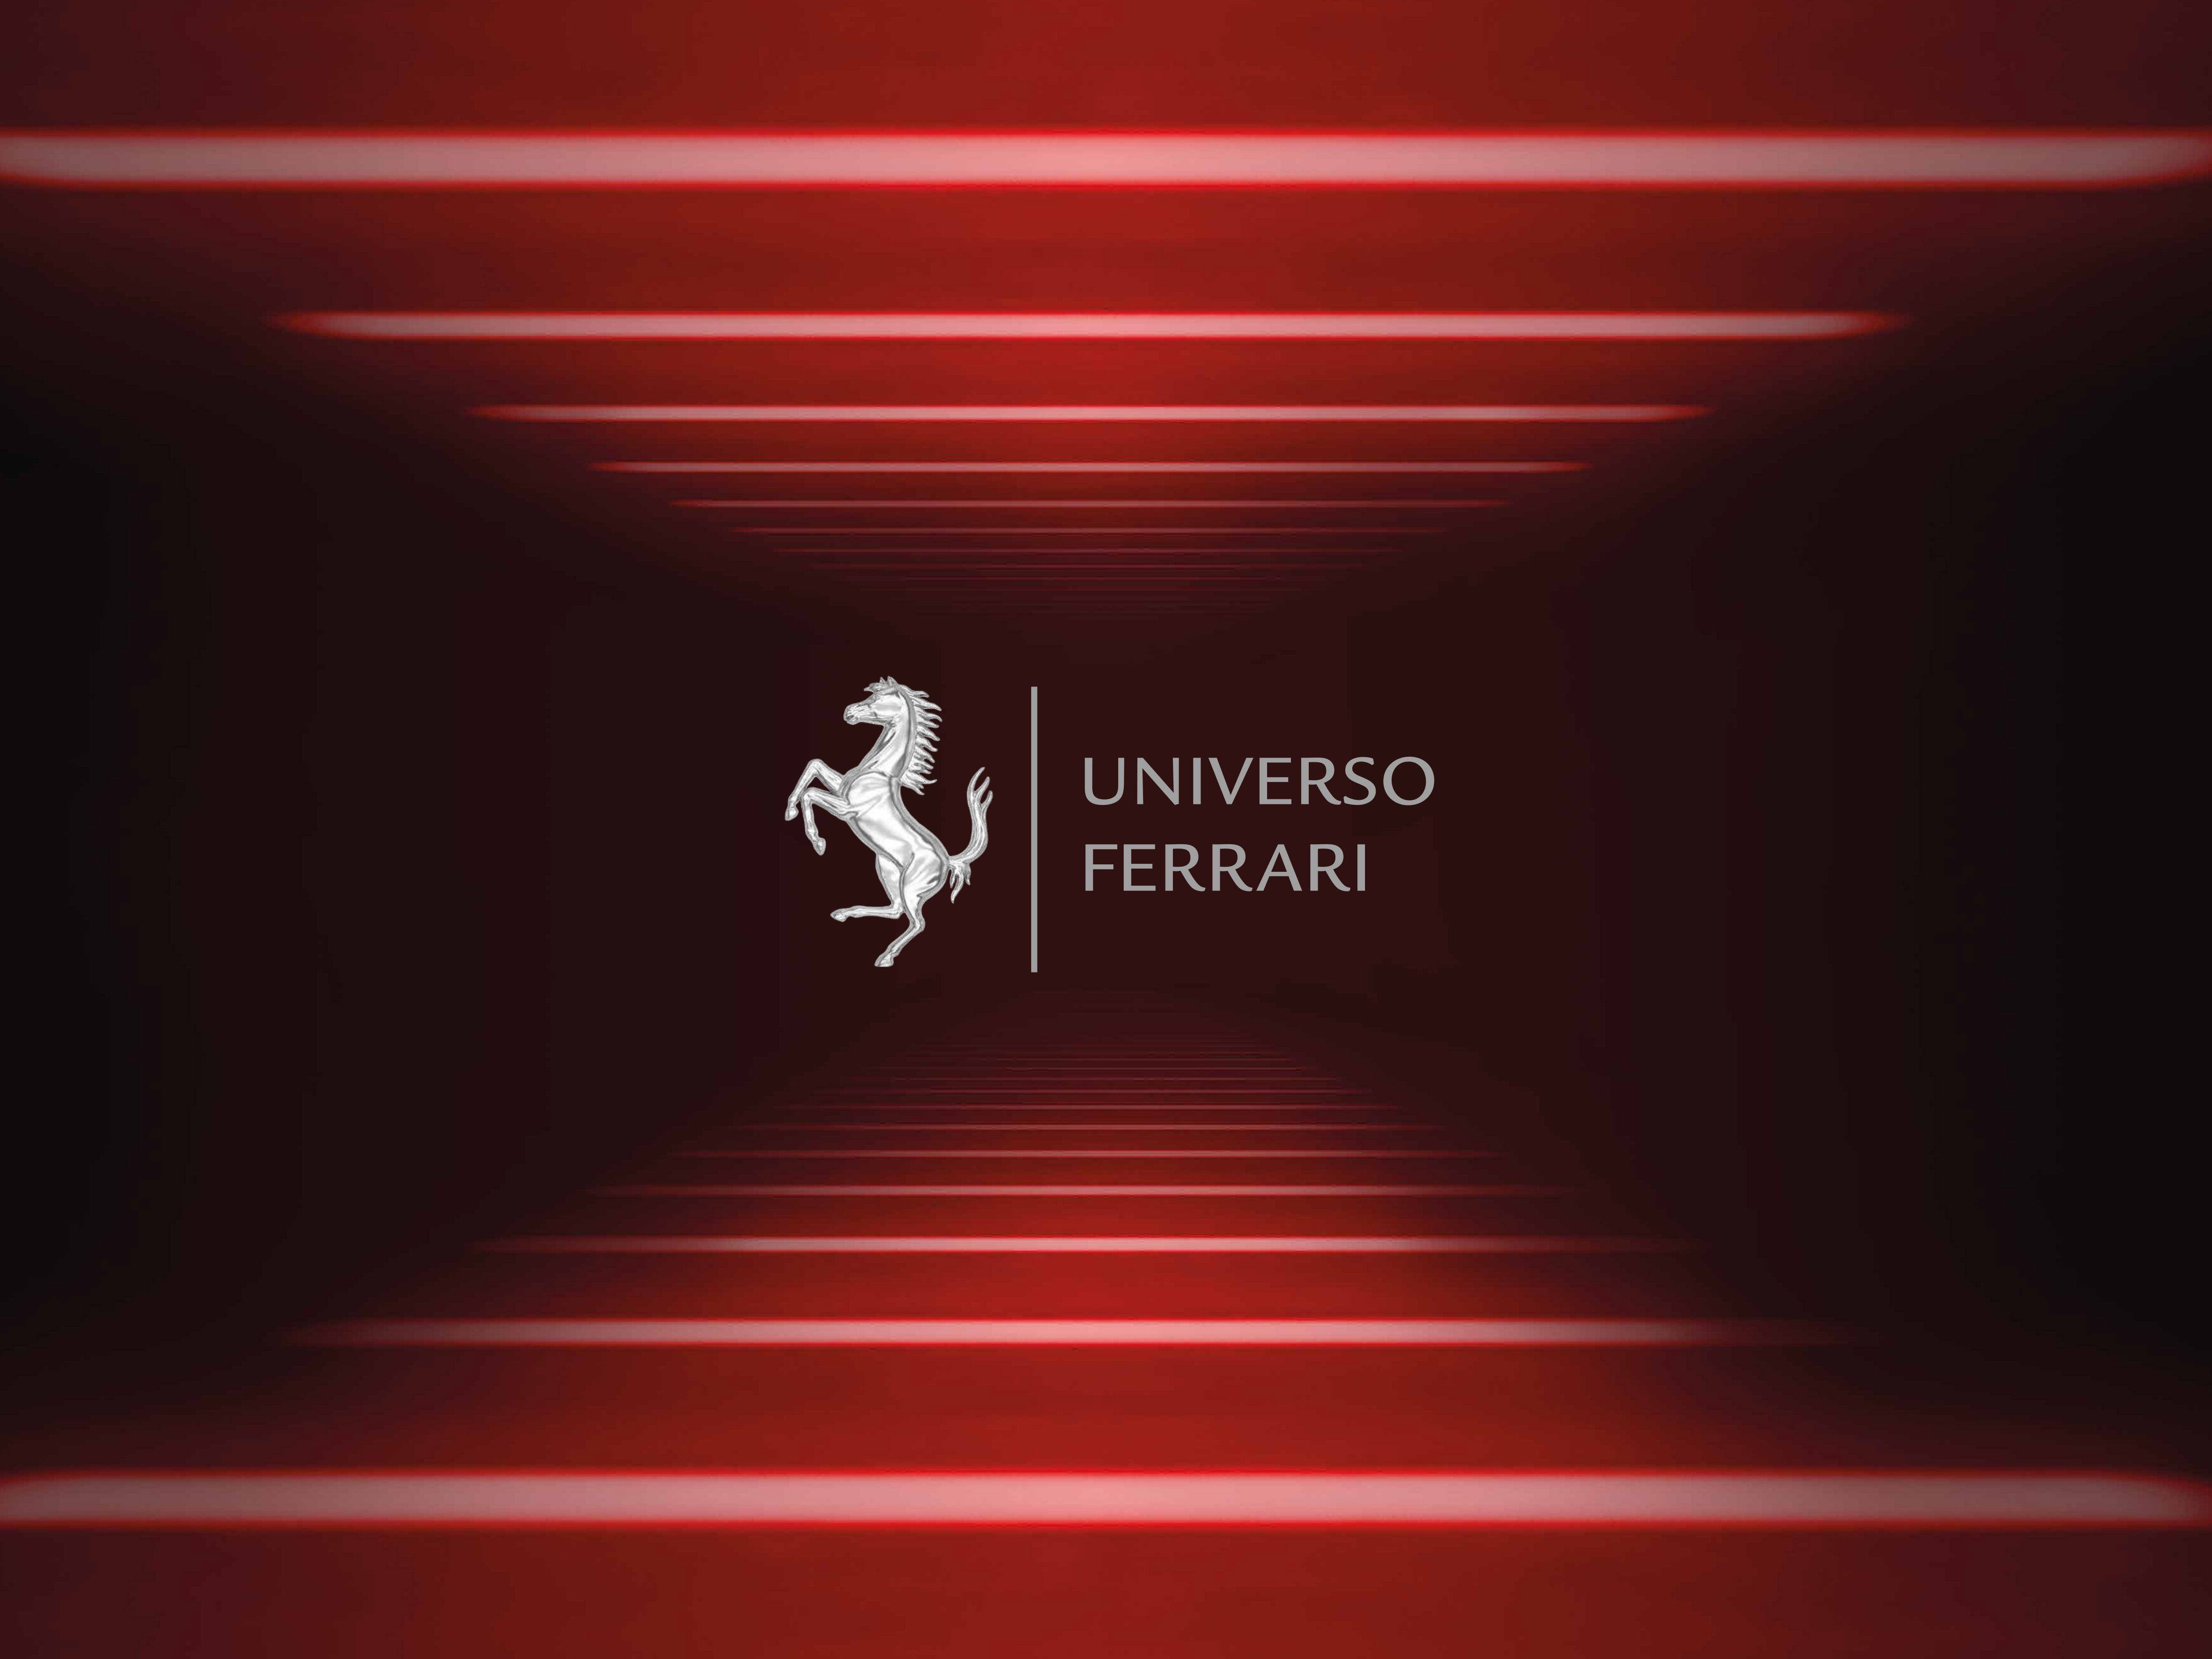 Universo Ferrari , apertura eccezionale per i tifosi e appassionati dei Musei Ferrari.